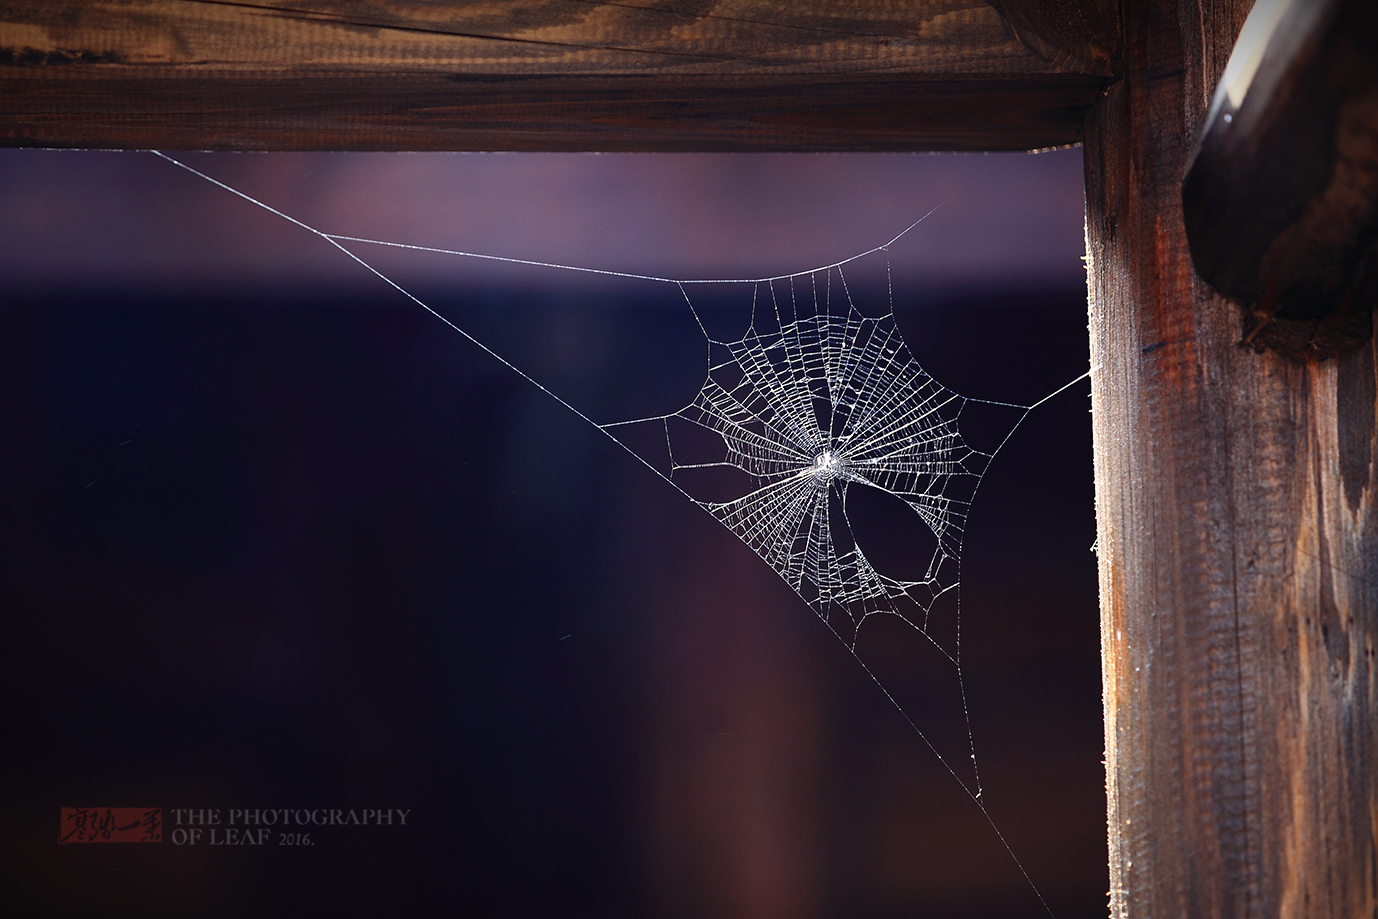 同福客栈屋檐下的蜘蛛网,未能网住那飞逝的岁月,但它网住了无数武林迷